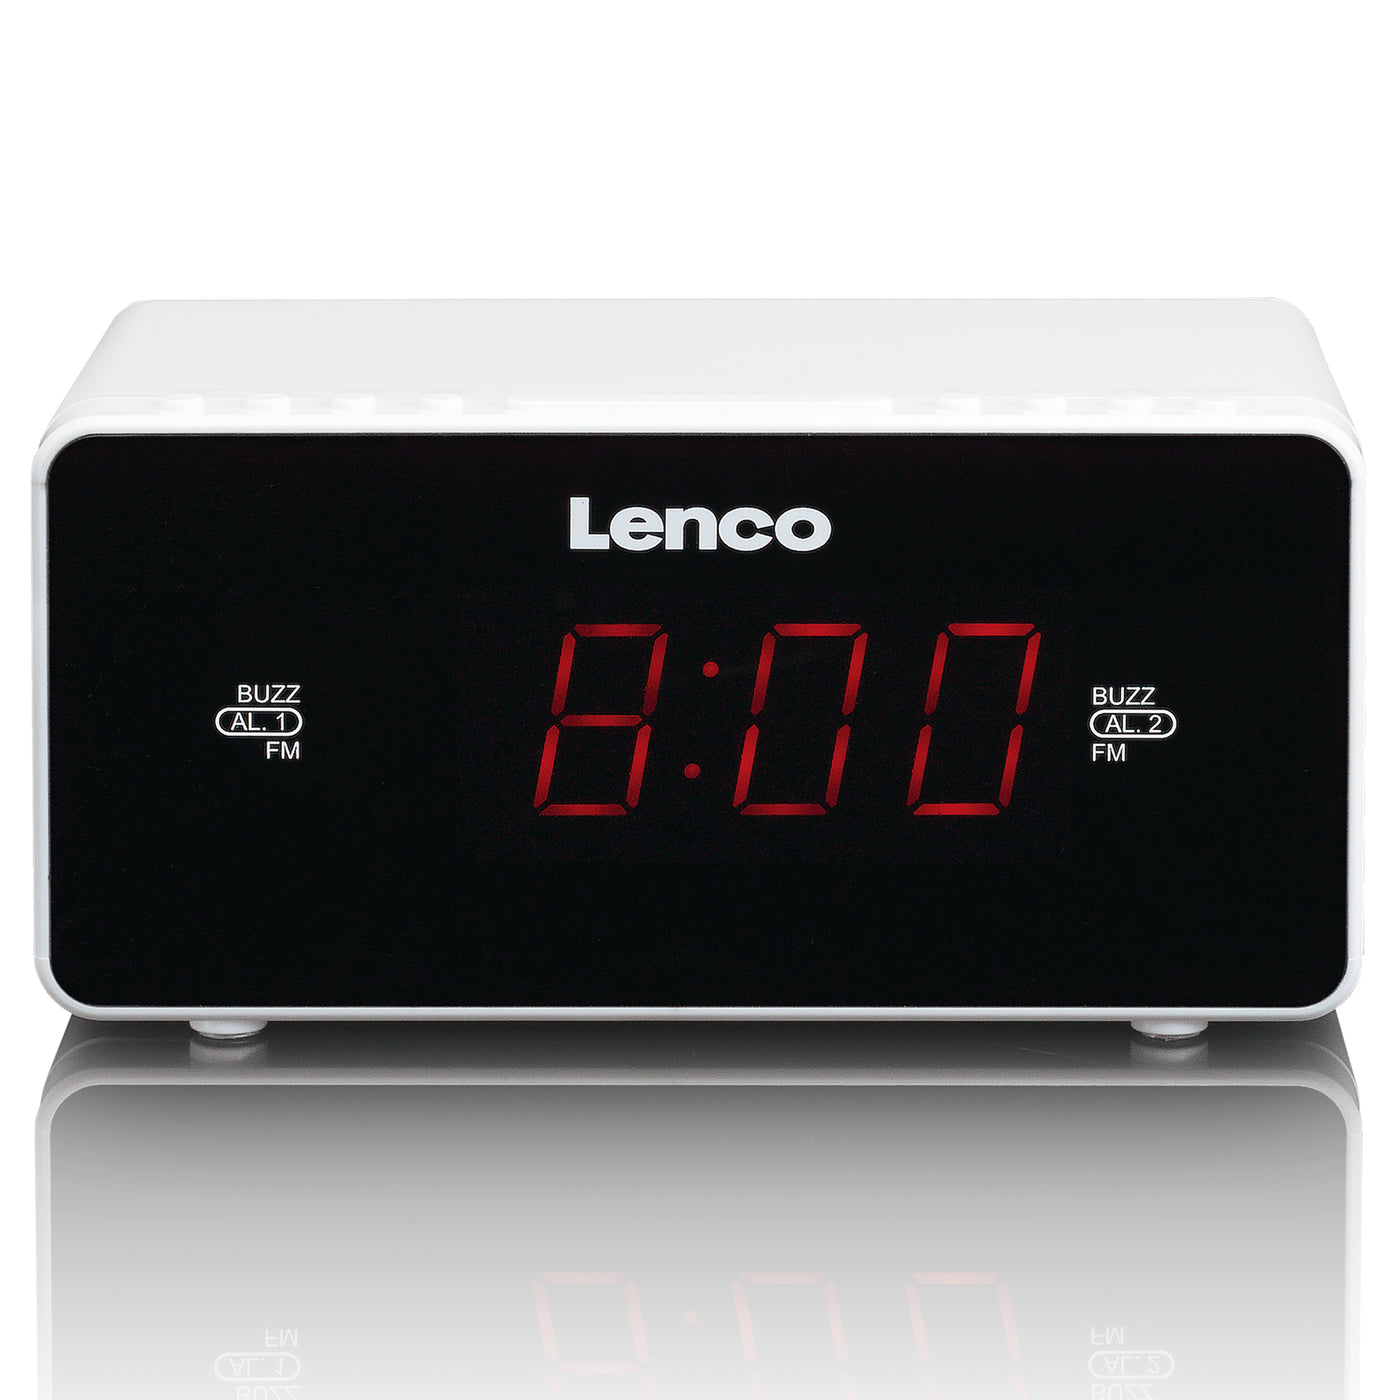 LENCO CR-510WH - Radiobudzik stereo FM z wyświetlaczem LED 0,9" - Biały